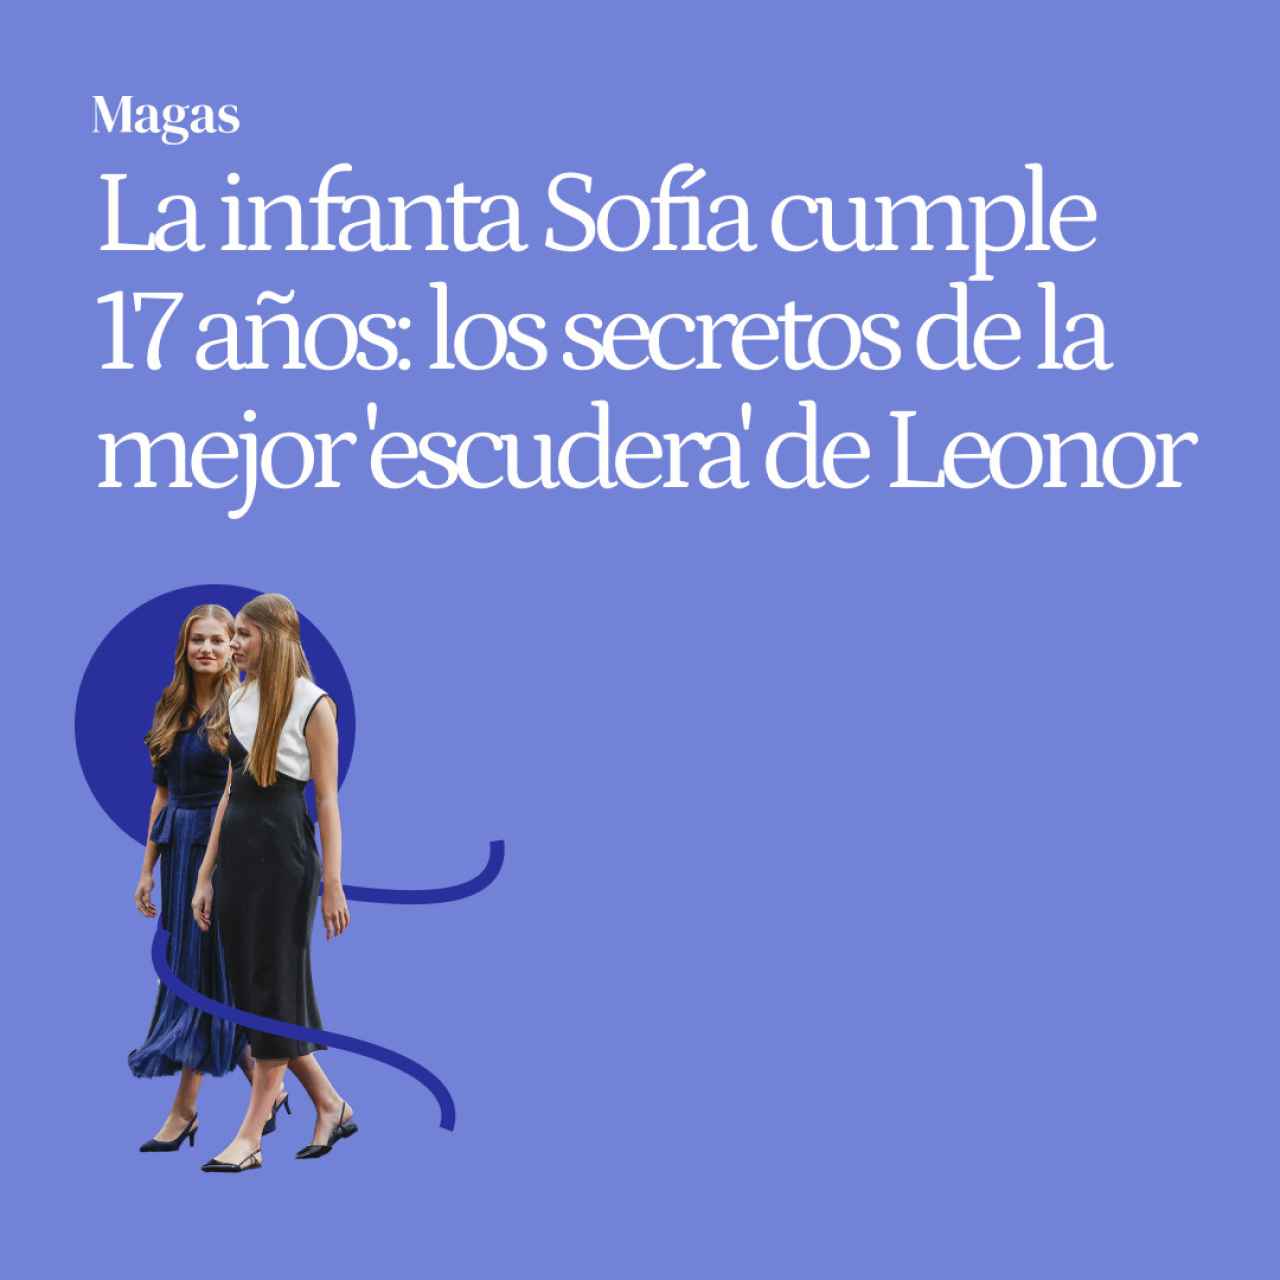 La infanta Sofía cumple 17 años: los secretos de la mejor 'escudera' de Leonor y su importante papel en la Corona